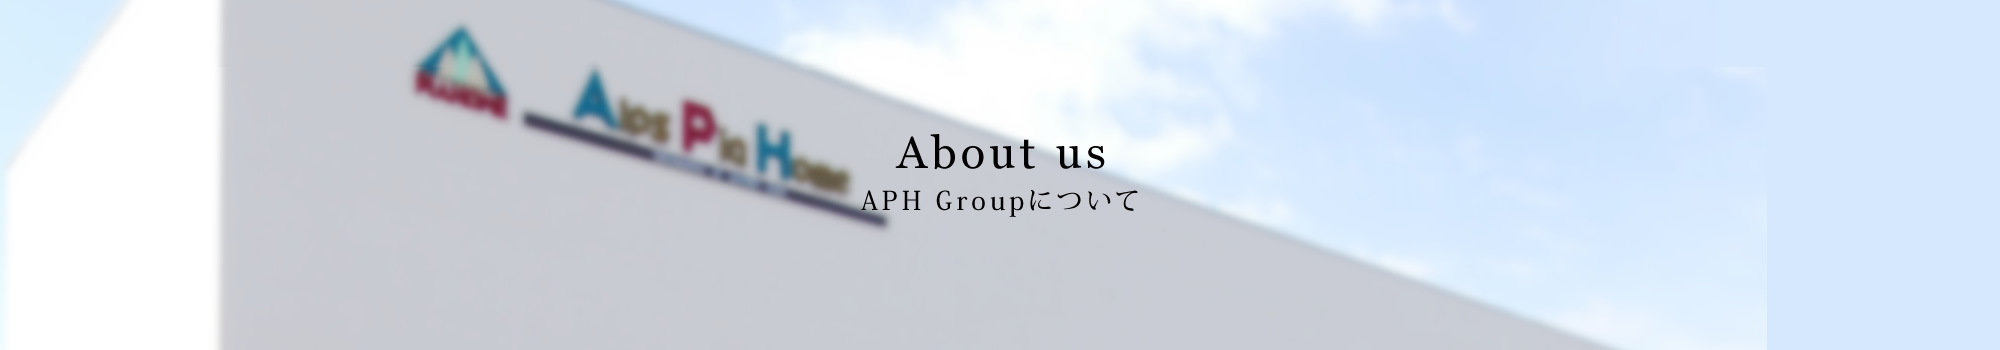 APH Groupについて